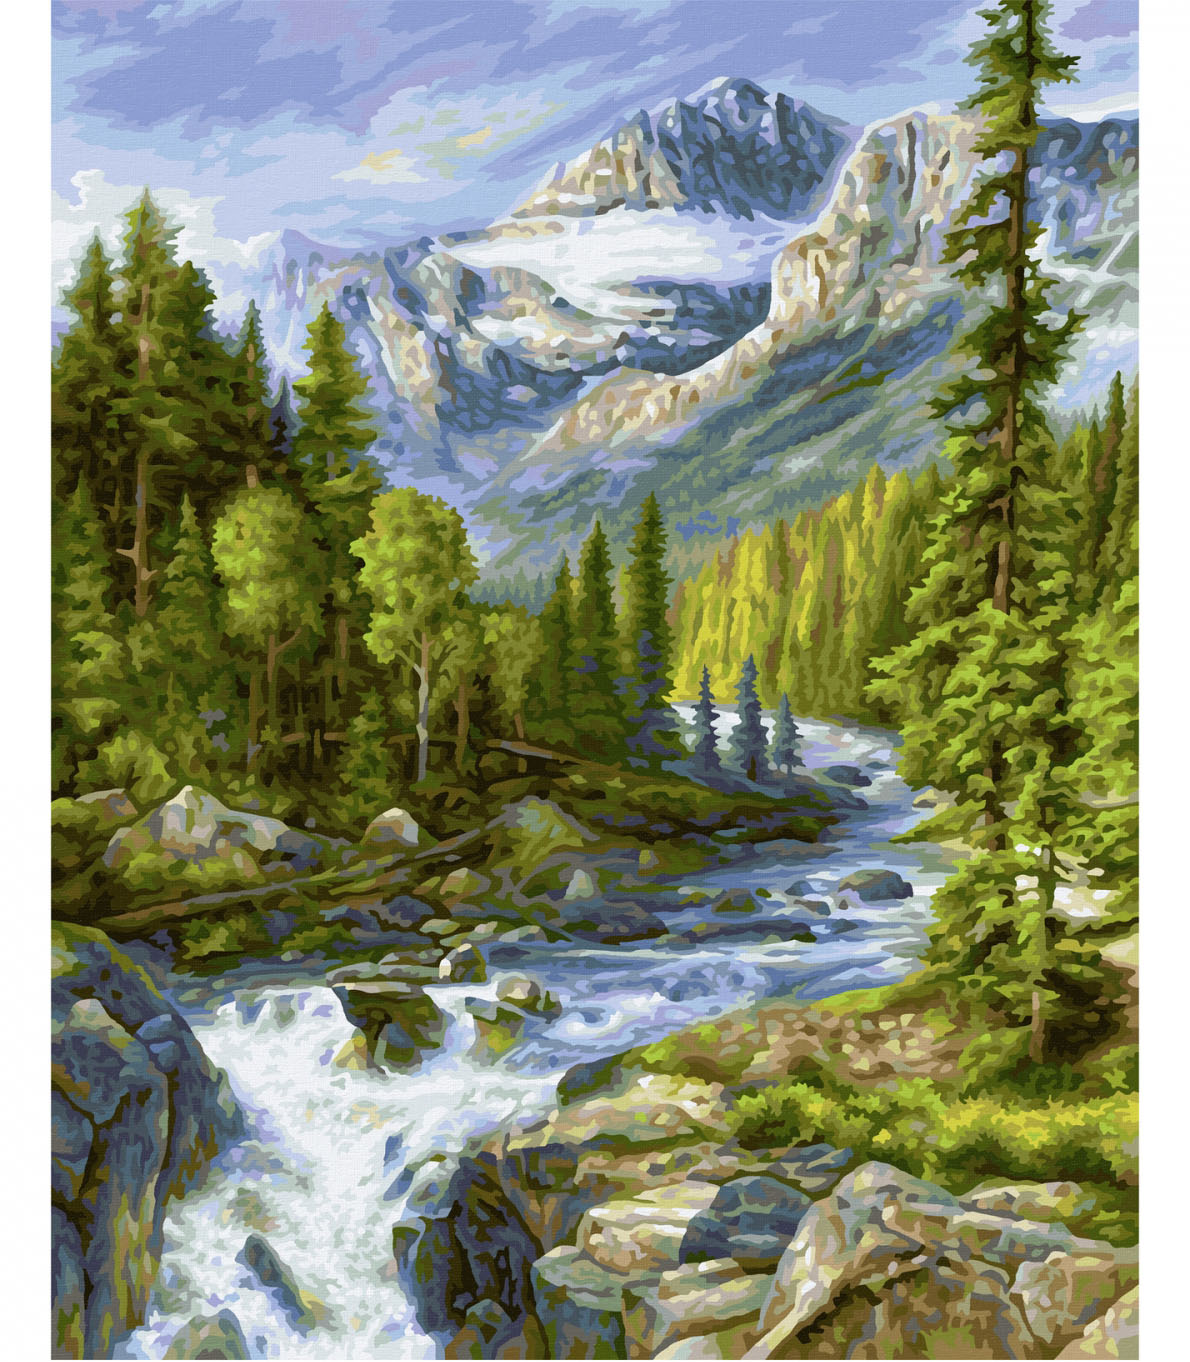 Maľovanie podľa čísel Rocky Mountains (40x50 cm) Schipper